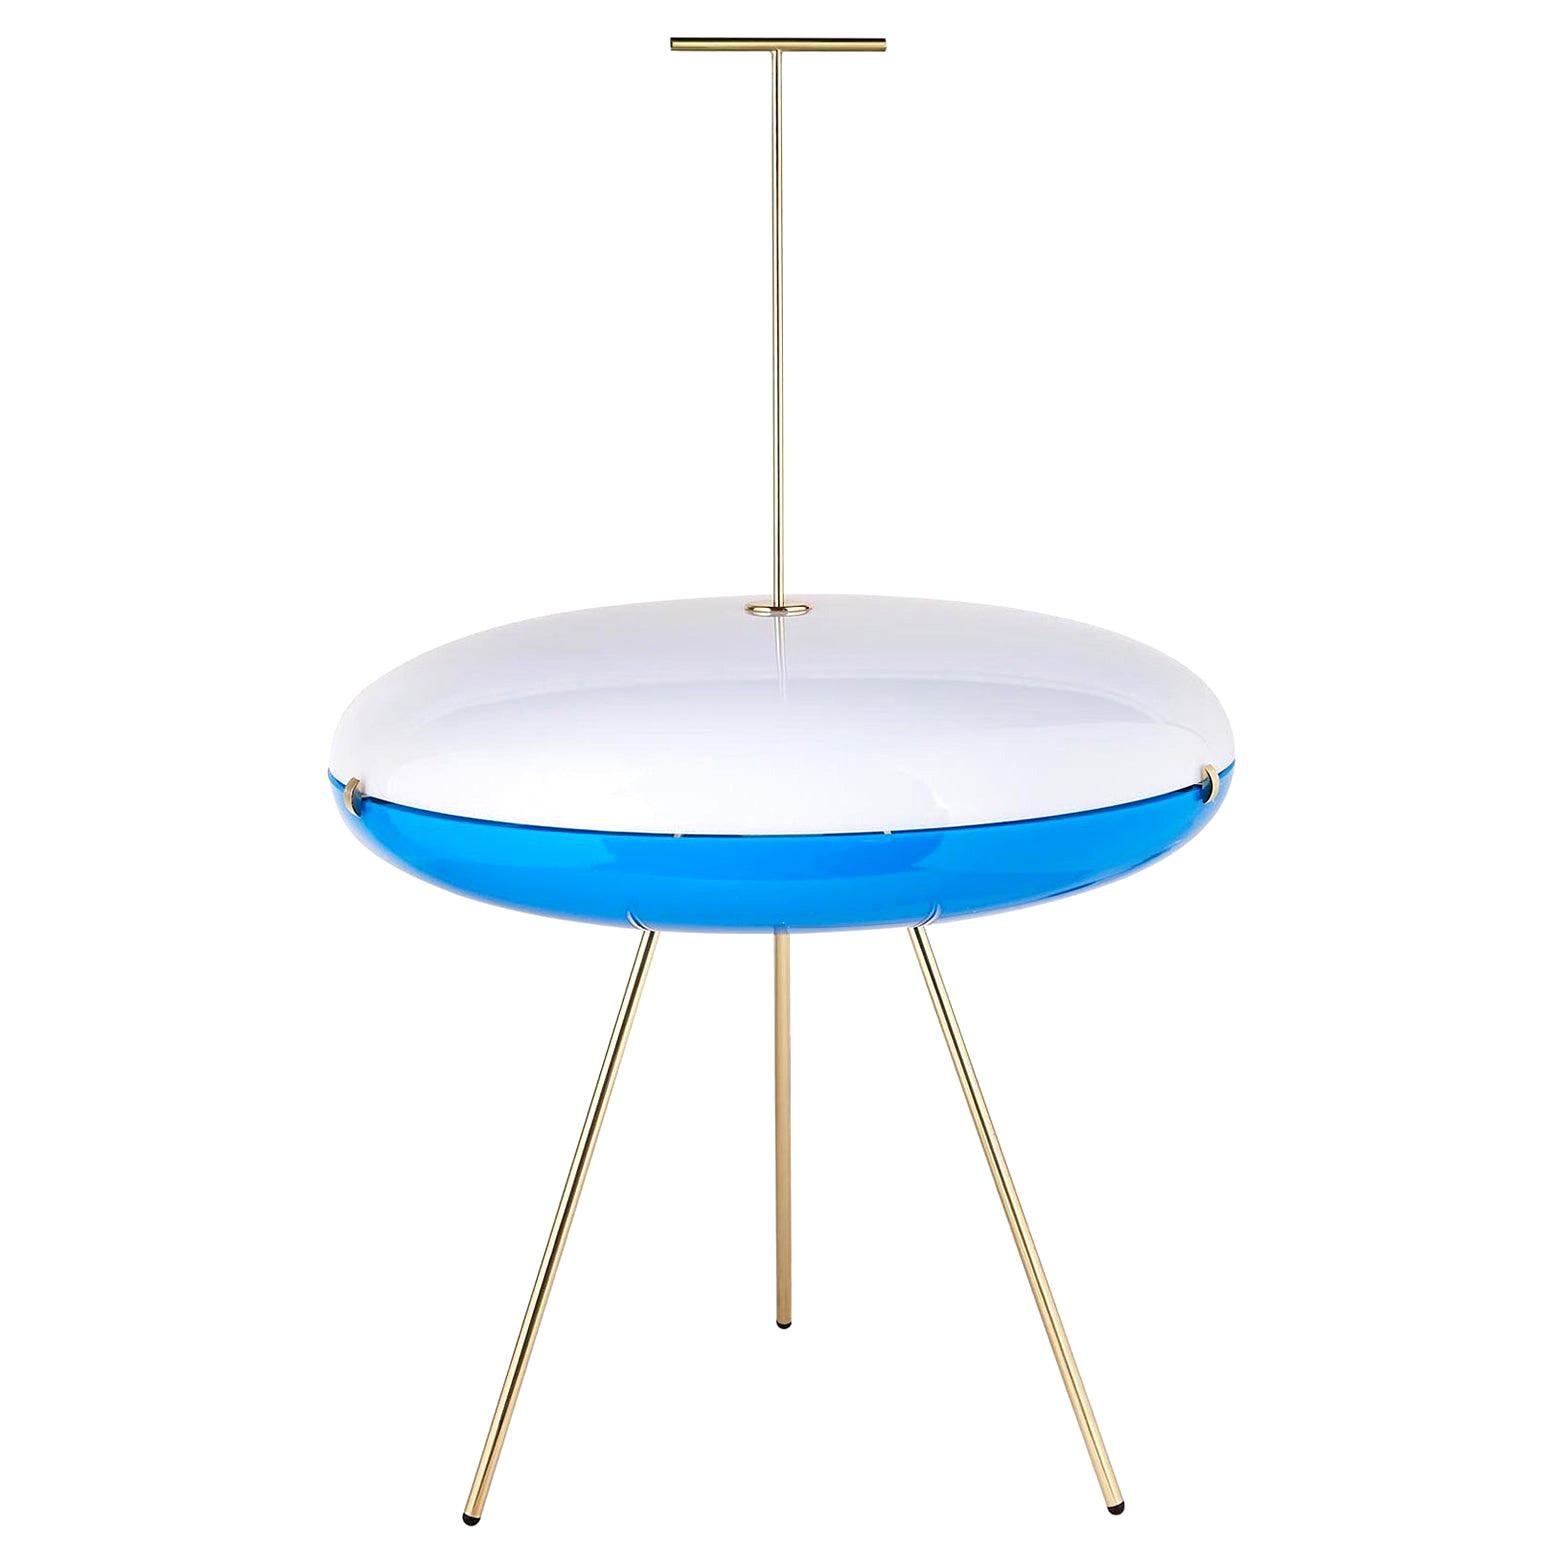 Gio Ponti Luna Orizzontale Floor Lamp in White and Blue Diffuser for Tato Italia For Sale